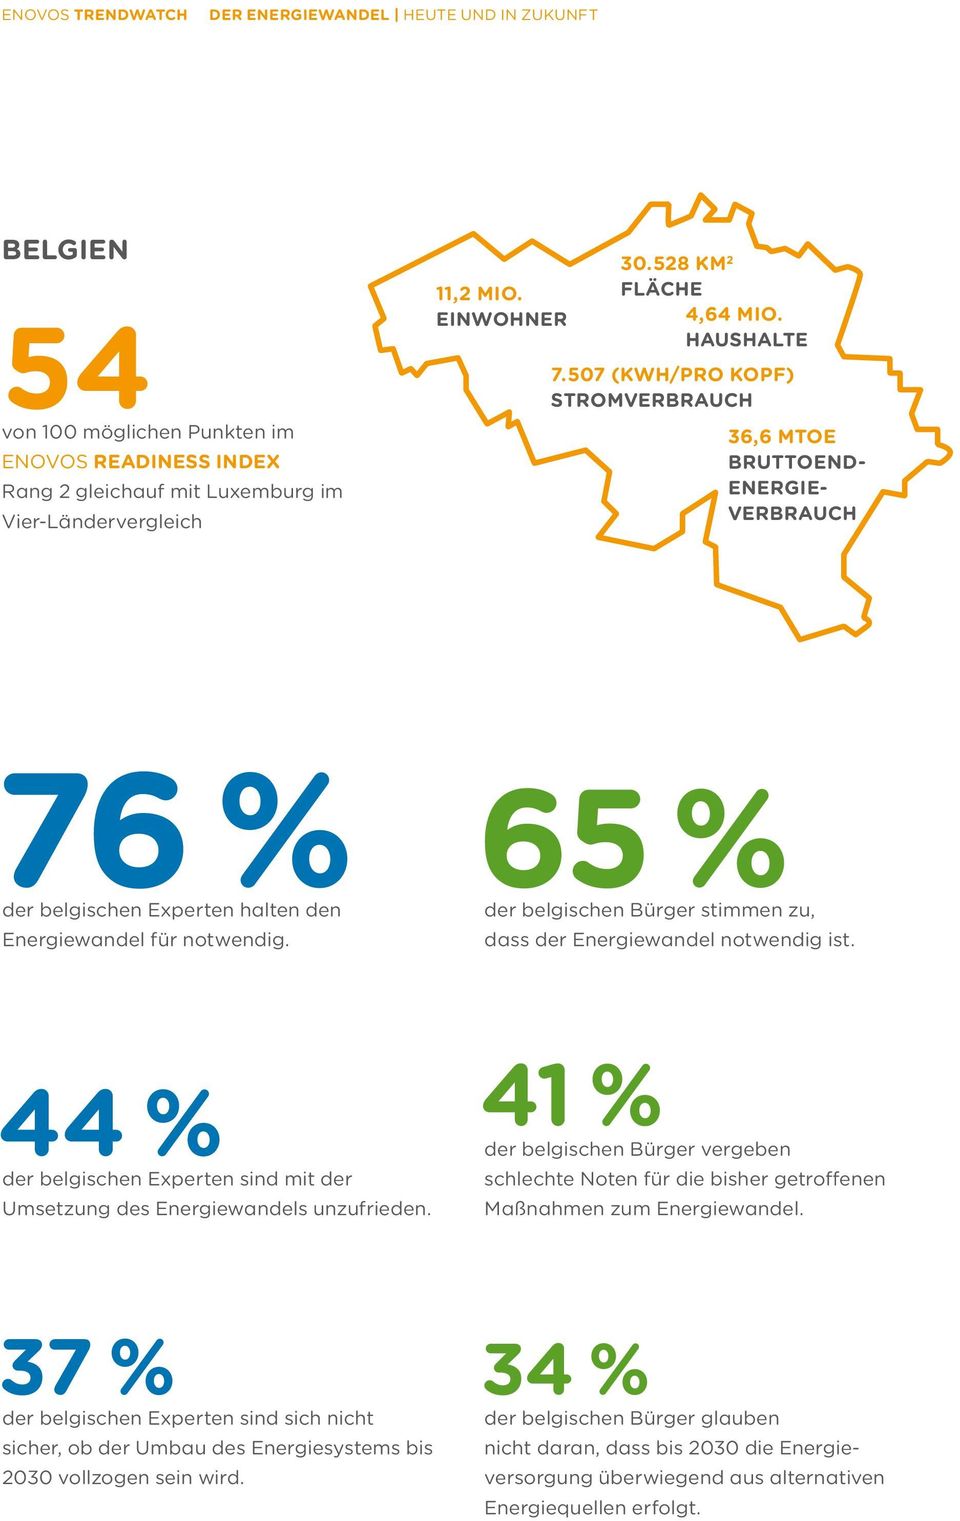 65 % der belgischen Bürger stimmen zu, dass der Energiewandel notwendig ist. 44 % der belgischen Experten sind mit der Umsetzung des Energiewandels unzufrieden.